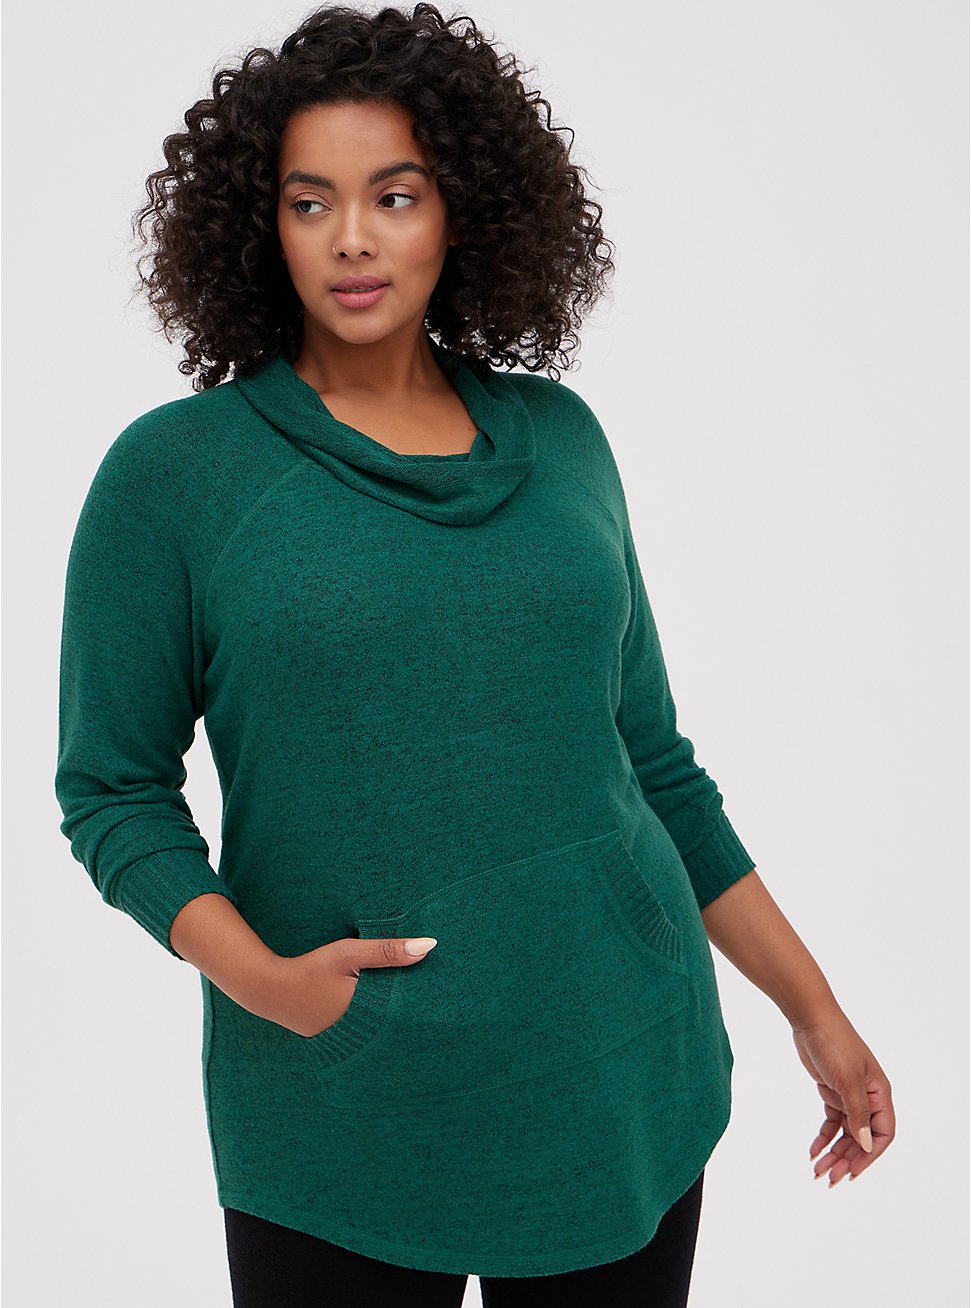 Tunic Sweatshirt - Super Soft Cowl Neck Green, GREEN, hi-res